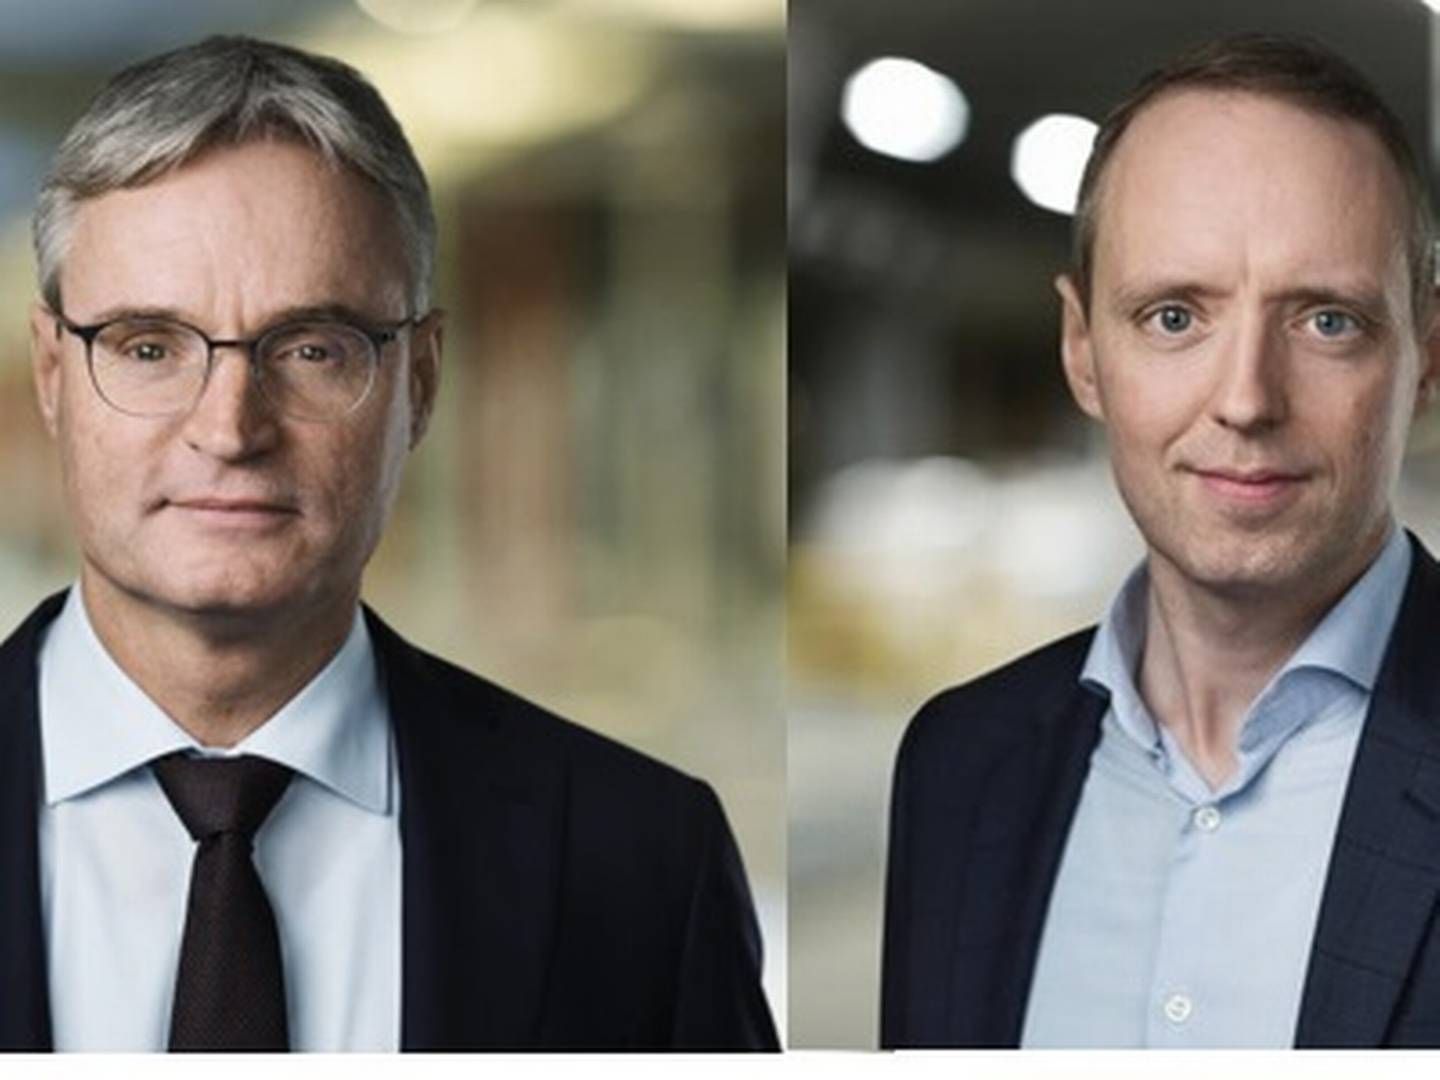 Efter otte års parløb i toppen af Salling Group afløser finansdirektør Anders Hagh (th) til efteråret Per Bank (tv) som adm. direktør. Hvem der skal tage over som finansdirektør står åbent. | Foto: PR/Salling Group